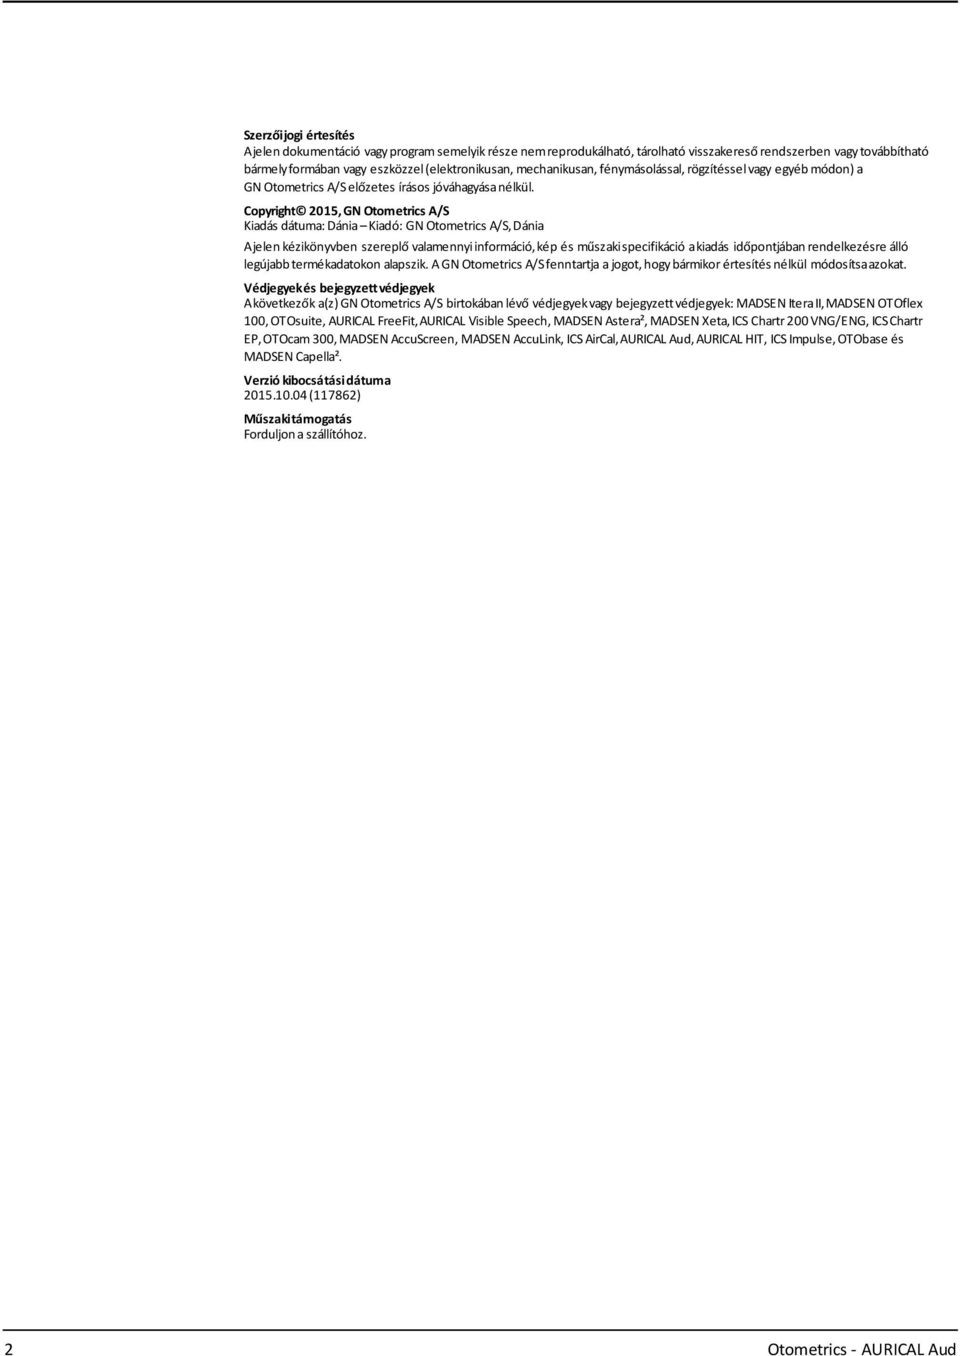 Copyright 2015, GN Otometrics A/S Kiadás dátuma: Dánia Kiadó: GN Otometrics A/S,Dánia Ajelen kézikönyvben szereplő valamennyiinformáció,kép és műszakispecifikáció akiadás időpontjában rendelkezésre